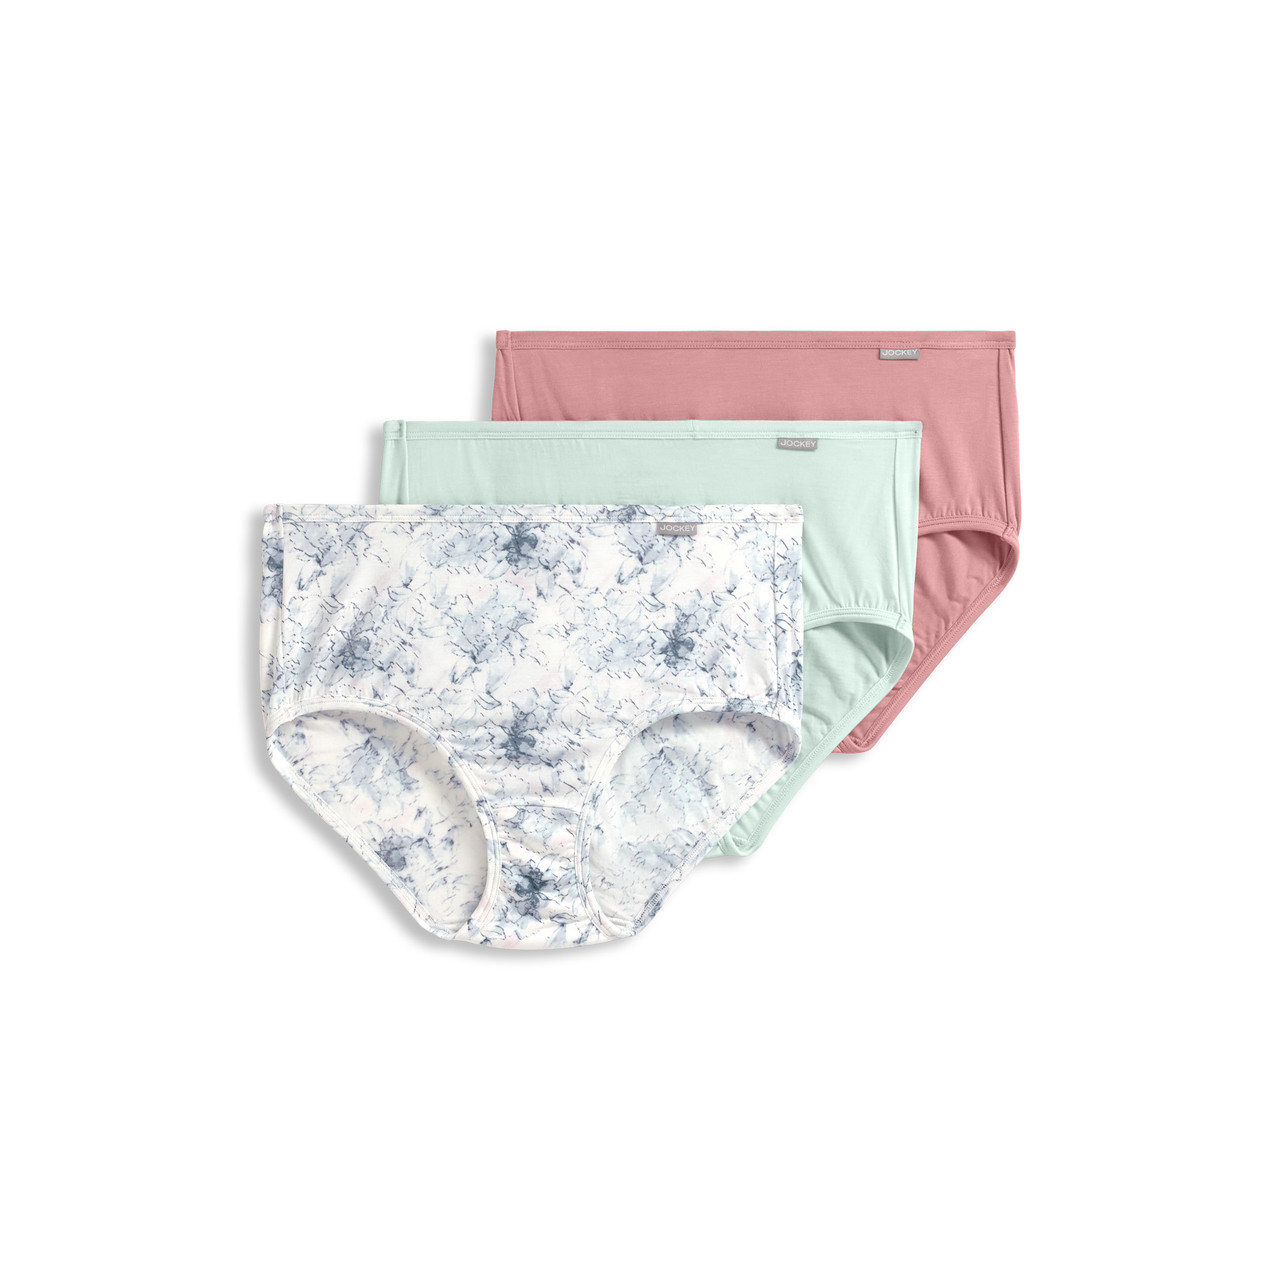  Limited Too Girls' Underwear - 6 Pack 100% Cotton